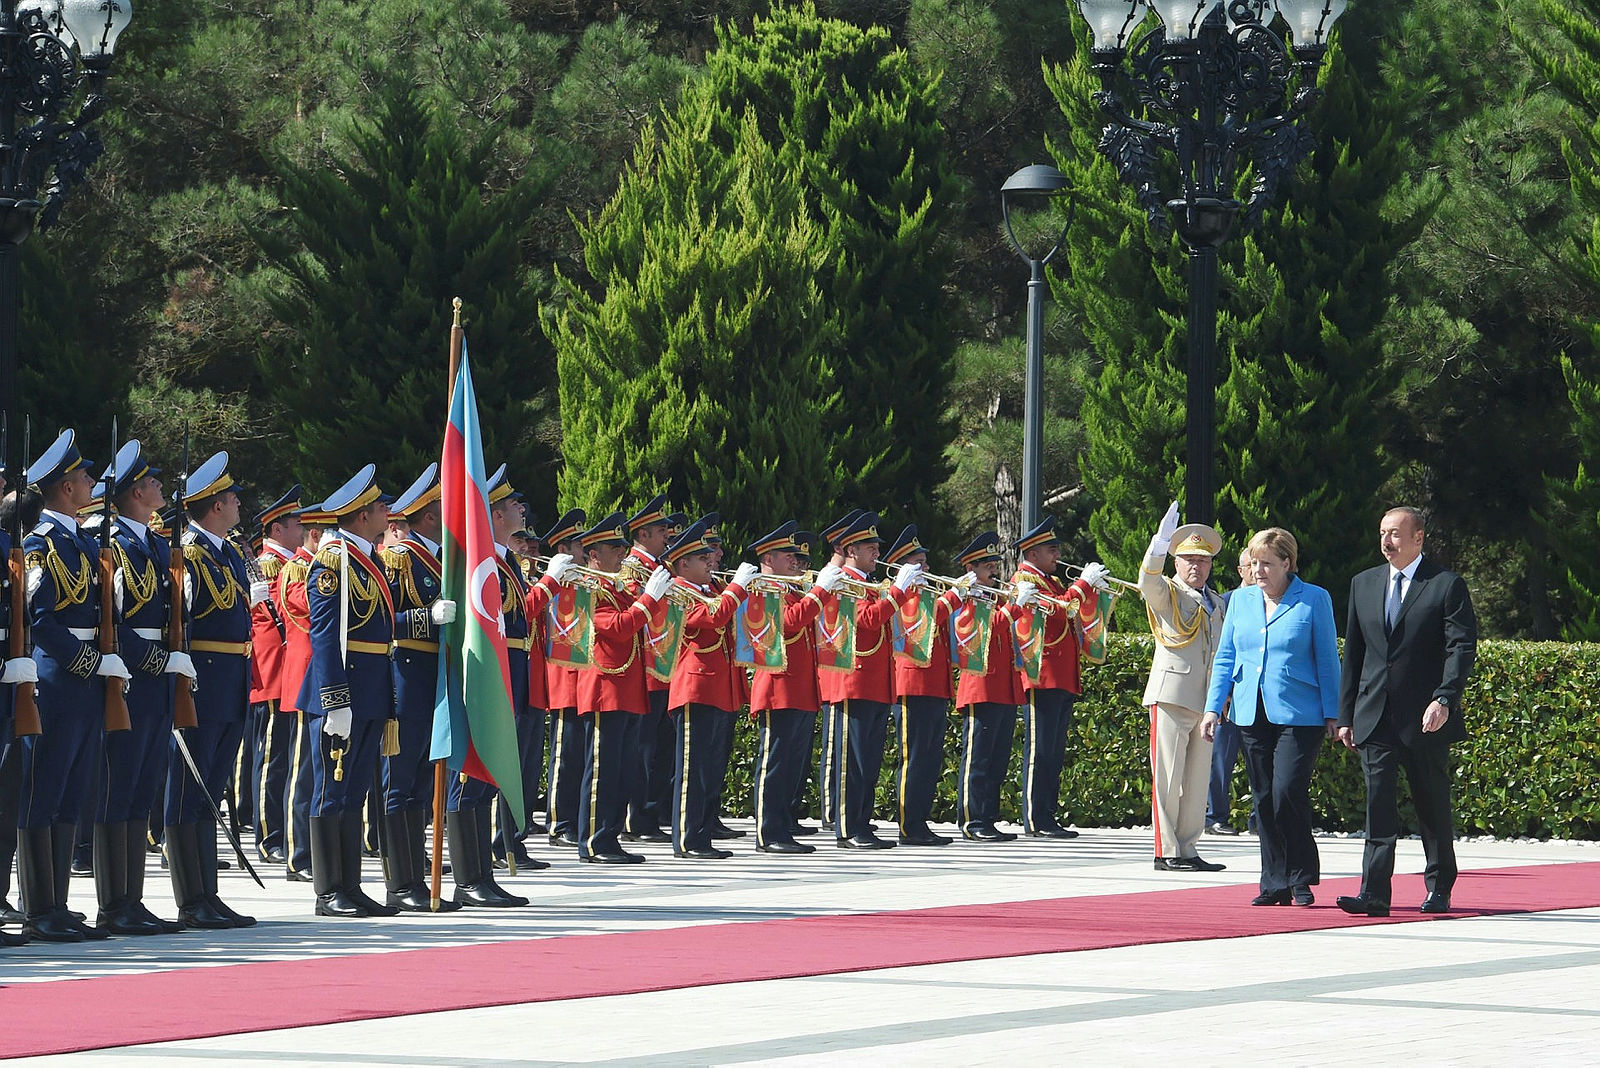 İlham Aliyev ile Angela Merkel’in görüşmesinde dikkat çeken konu